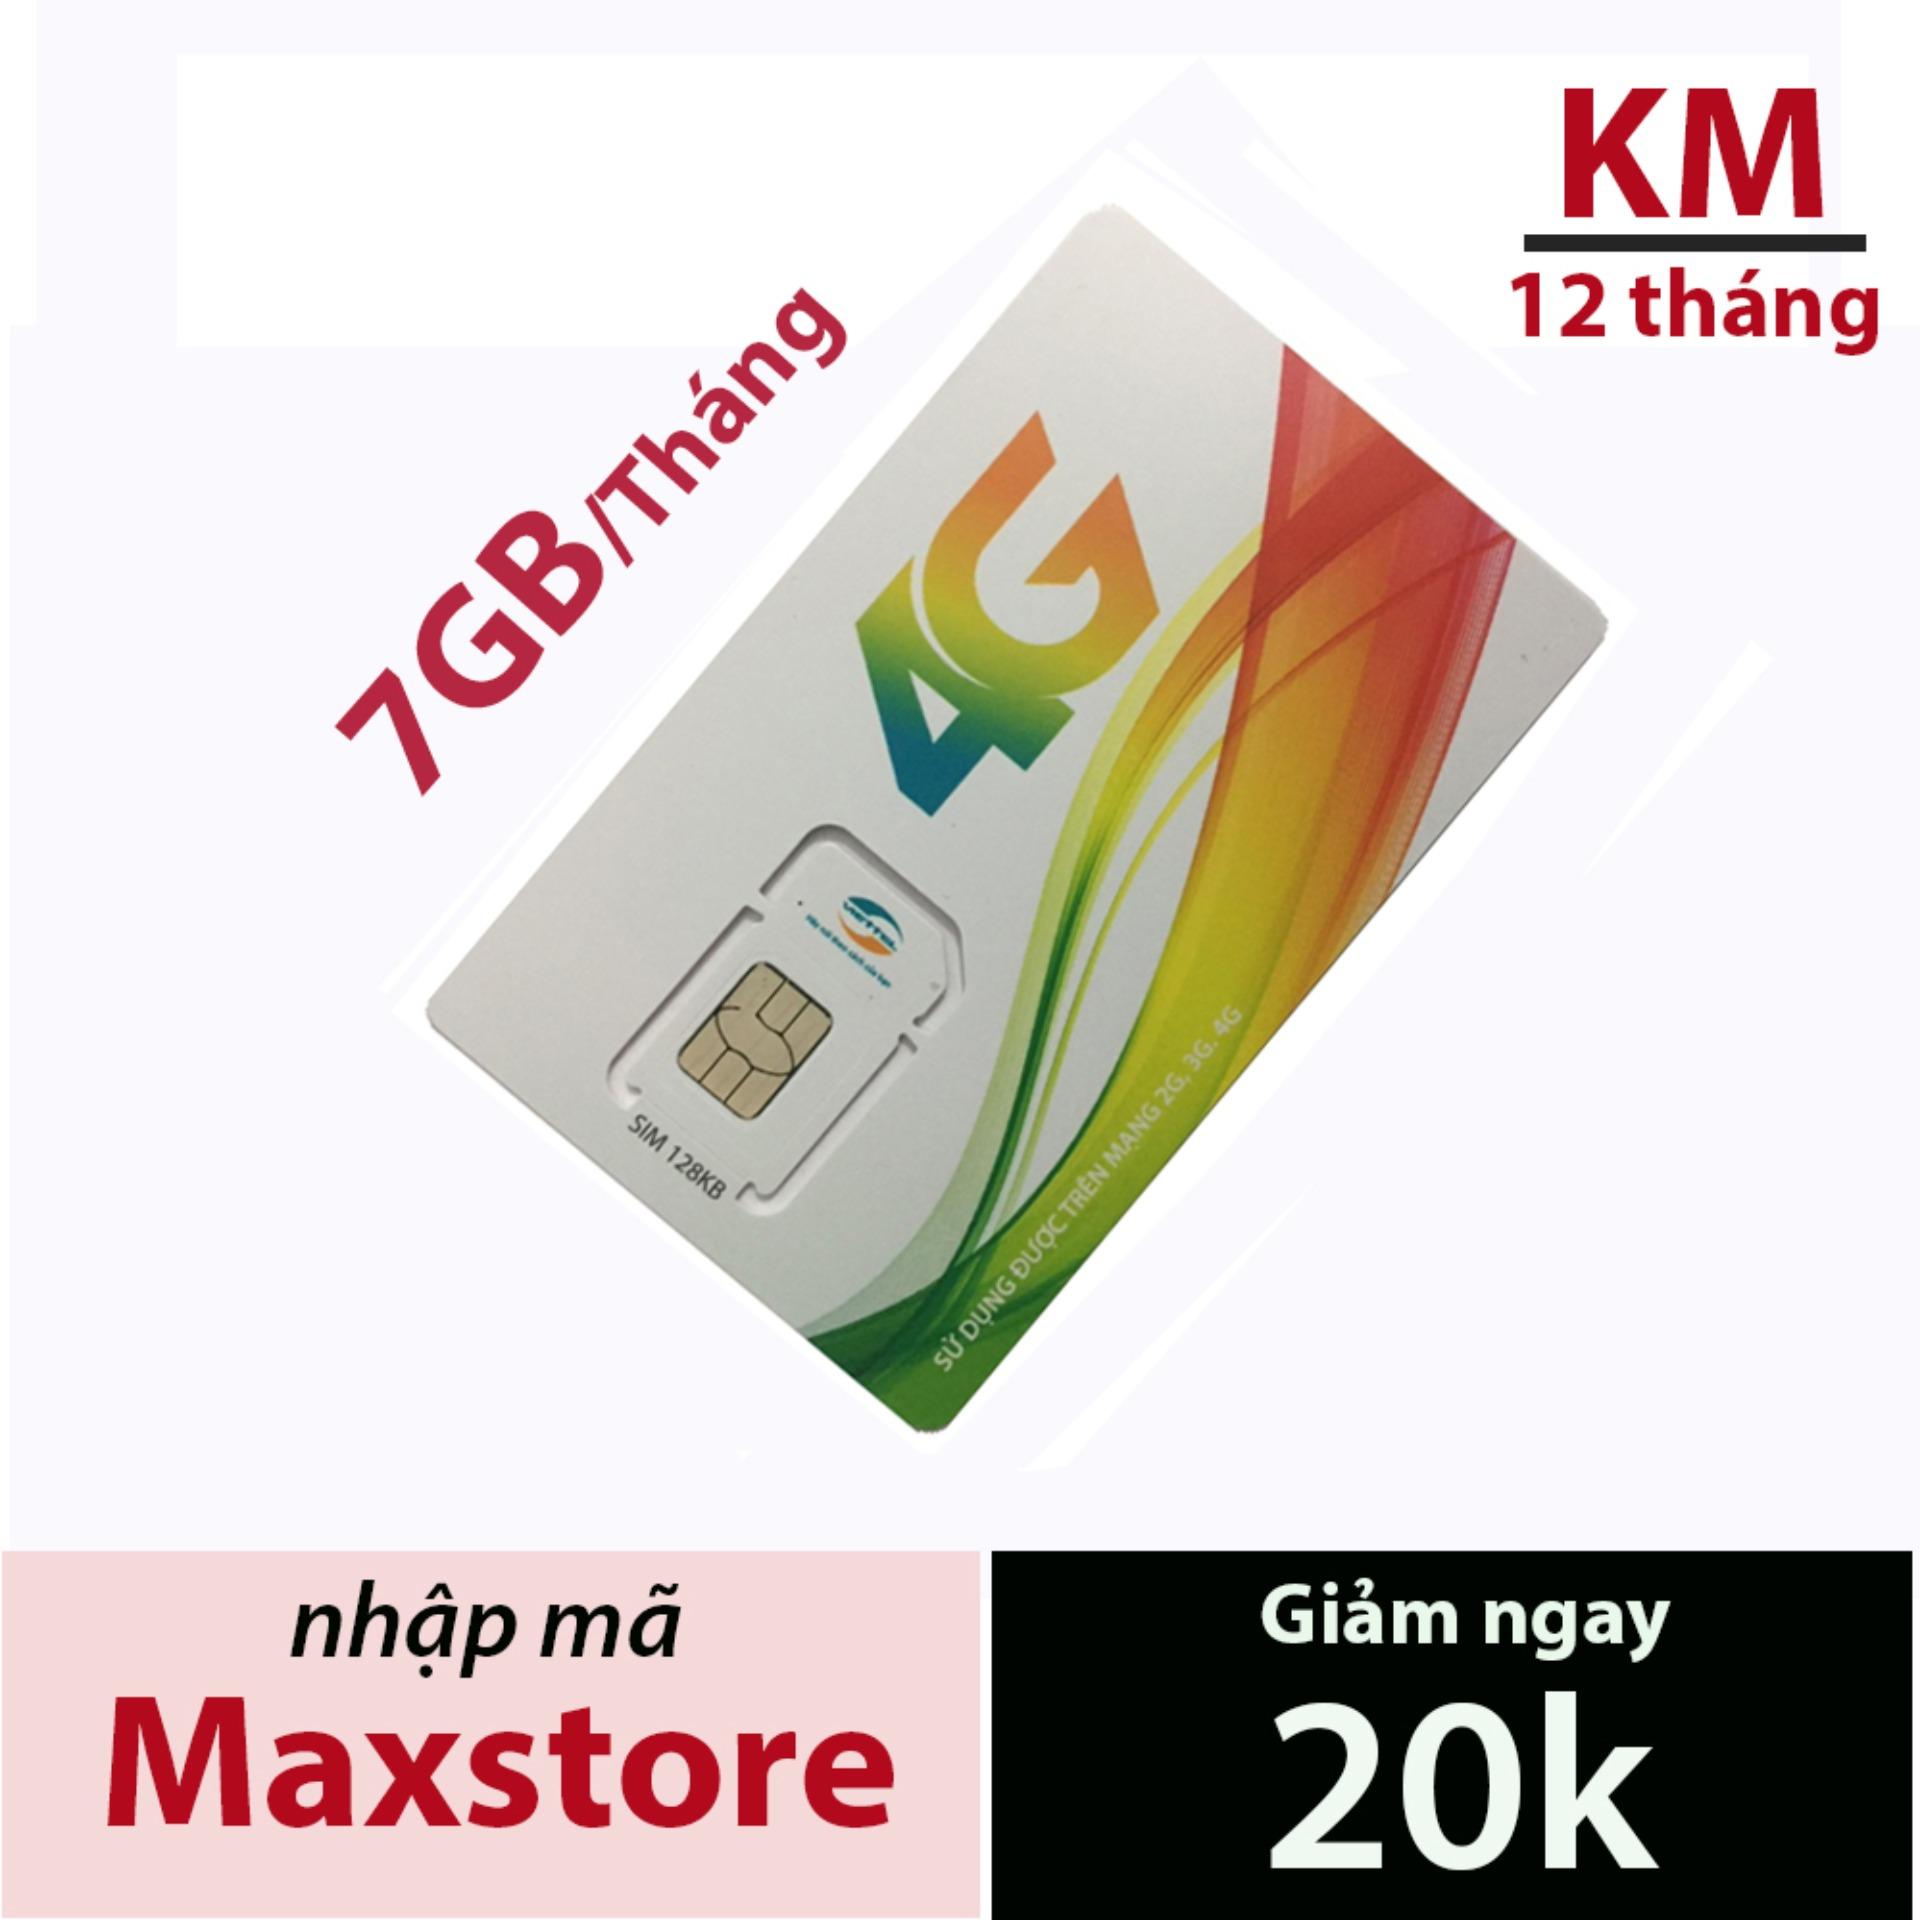 Sim 4G Viettel D900 miễn phí 12 tháng sử dụng (7GB/THÁNG) từ maxstore - không mất tiền gia hạn.Mua về...